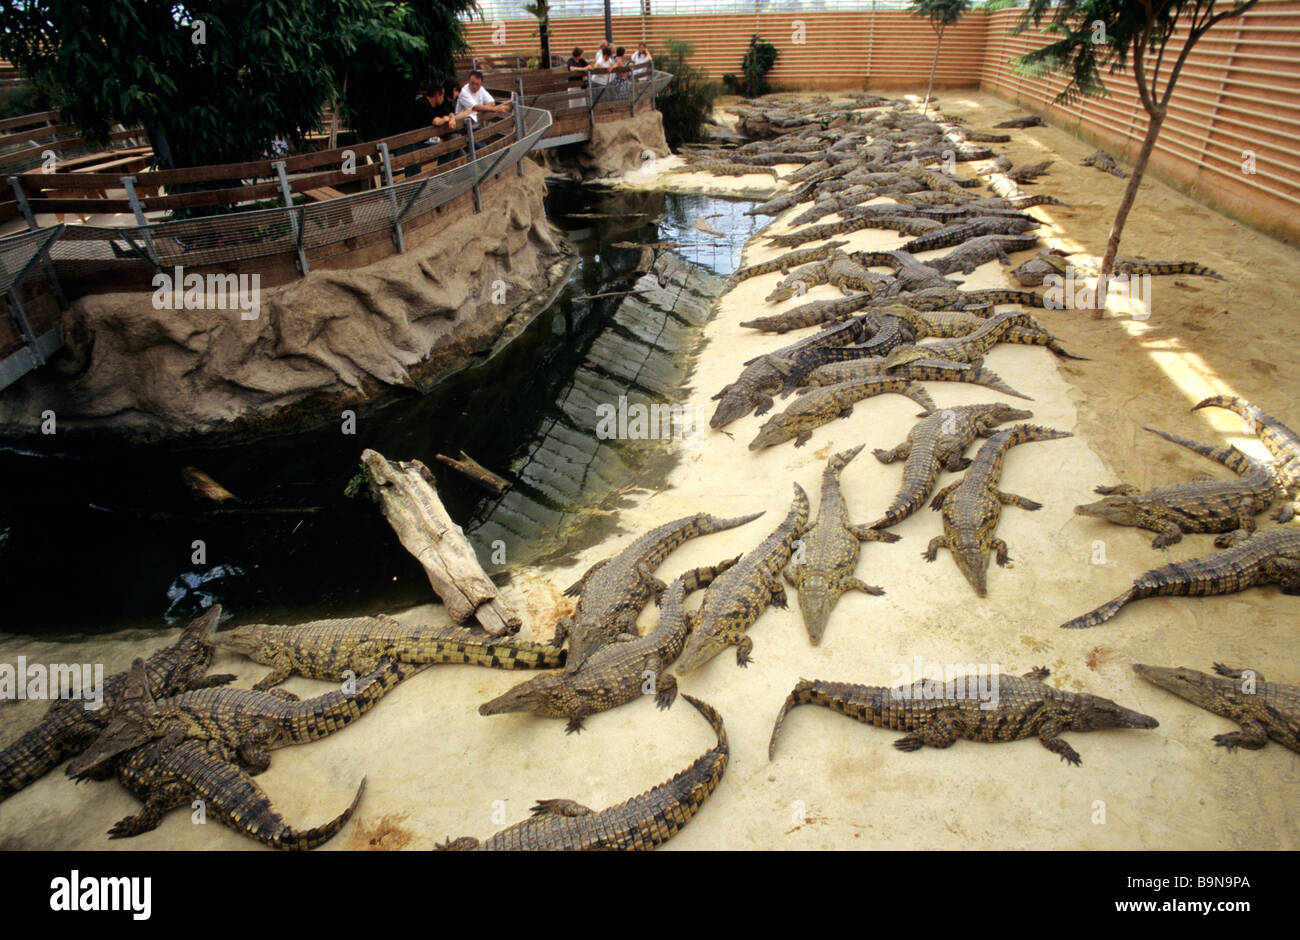 France, Drome, Drome Provencale, Pierrelatte, La Ferme aux crocodiles ( Crocodile Farm Stock Photo - Alamy